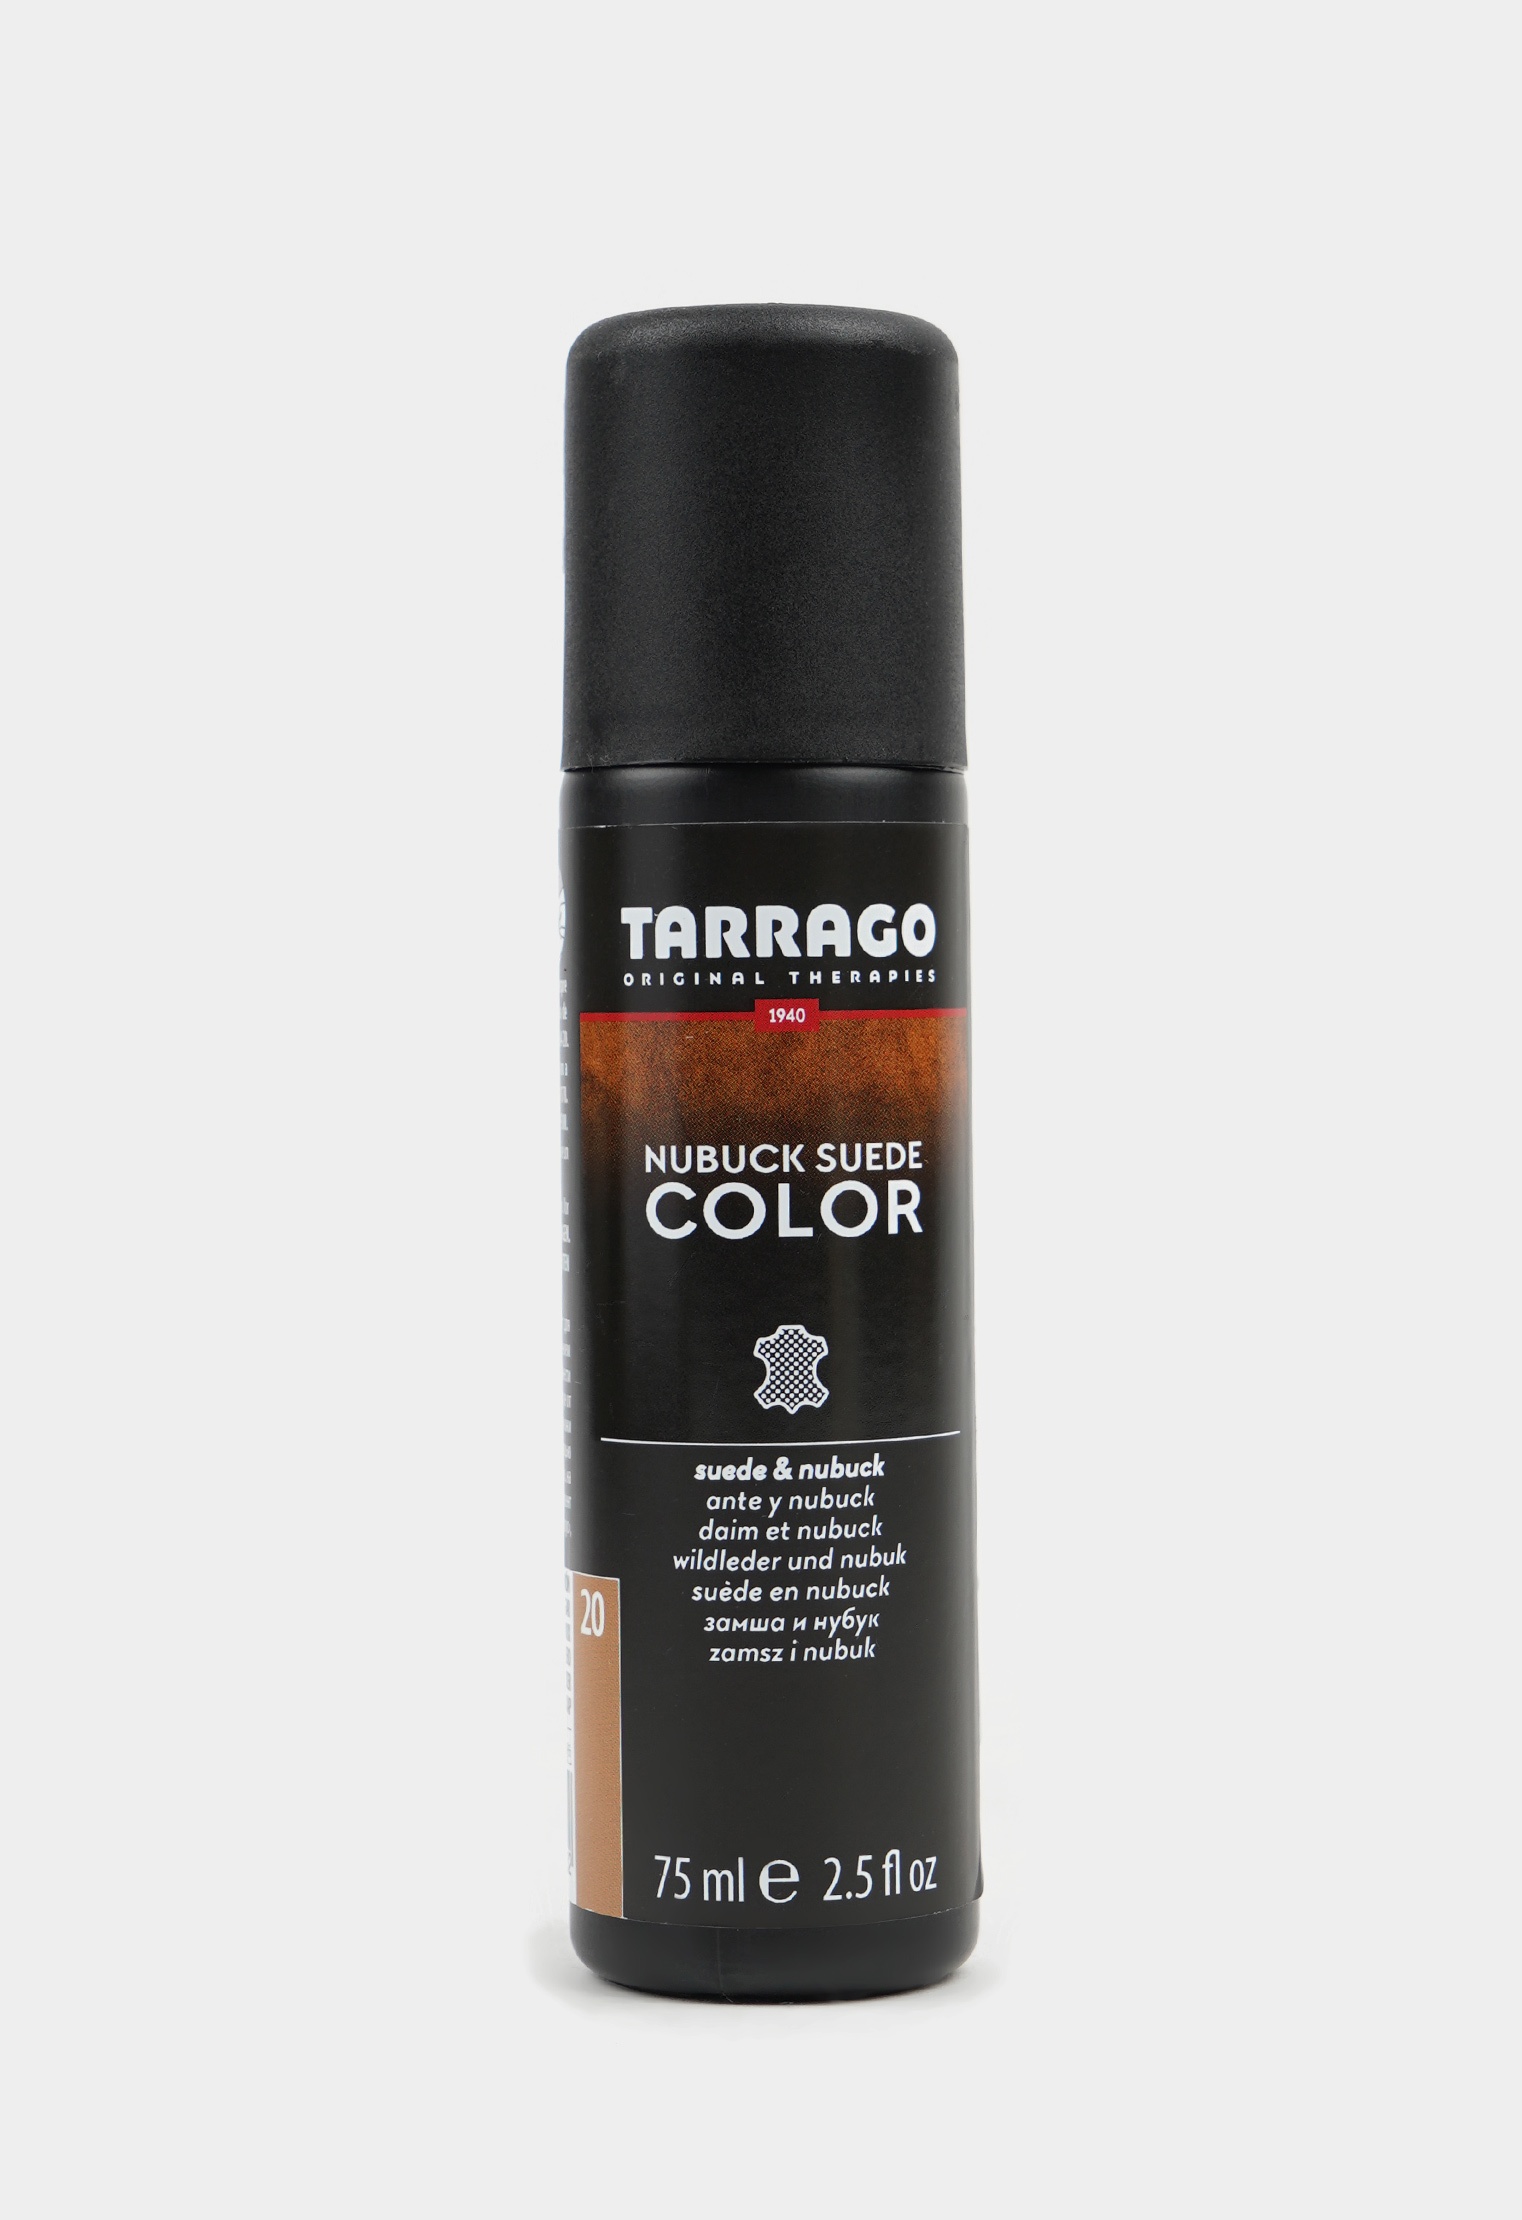 Аэрозоли для восстановления цвета 20-8905 TARRAGO - 020 Краситель для замши и нубука, NUBUCK COLOR, флакон, 75мл. (brown sugar) краска для обуви tarrago серая краска для замши tarrago nubuck color